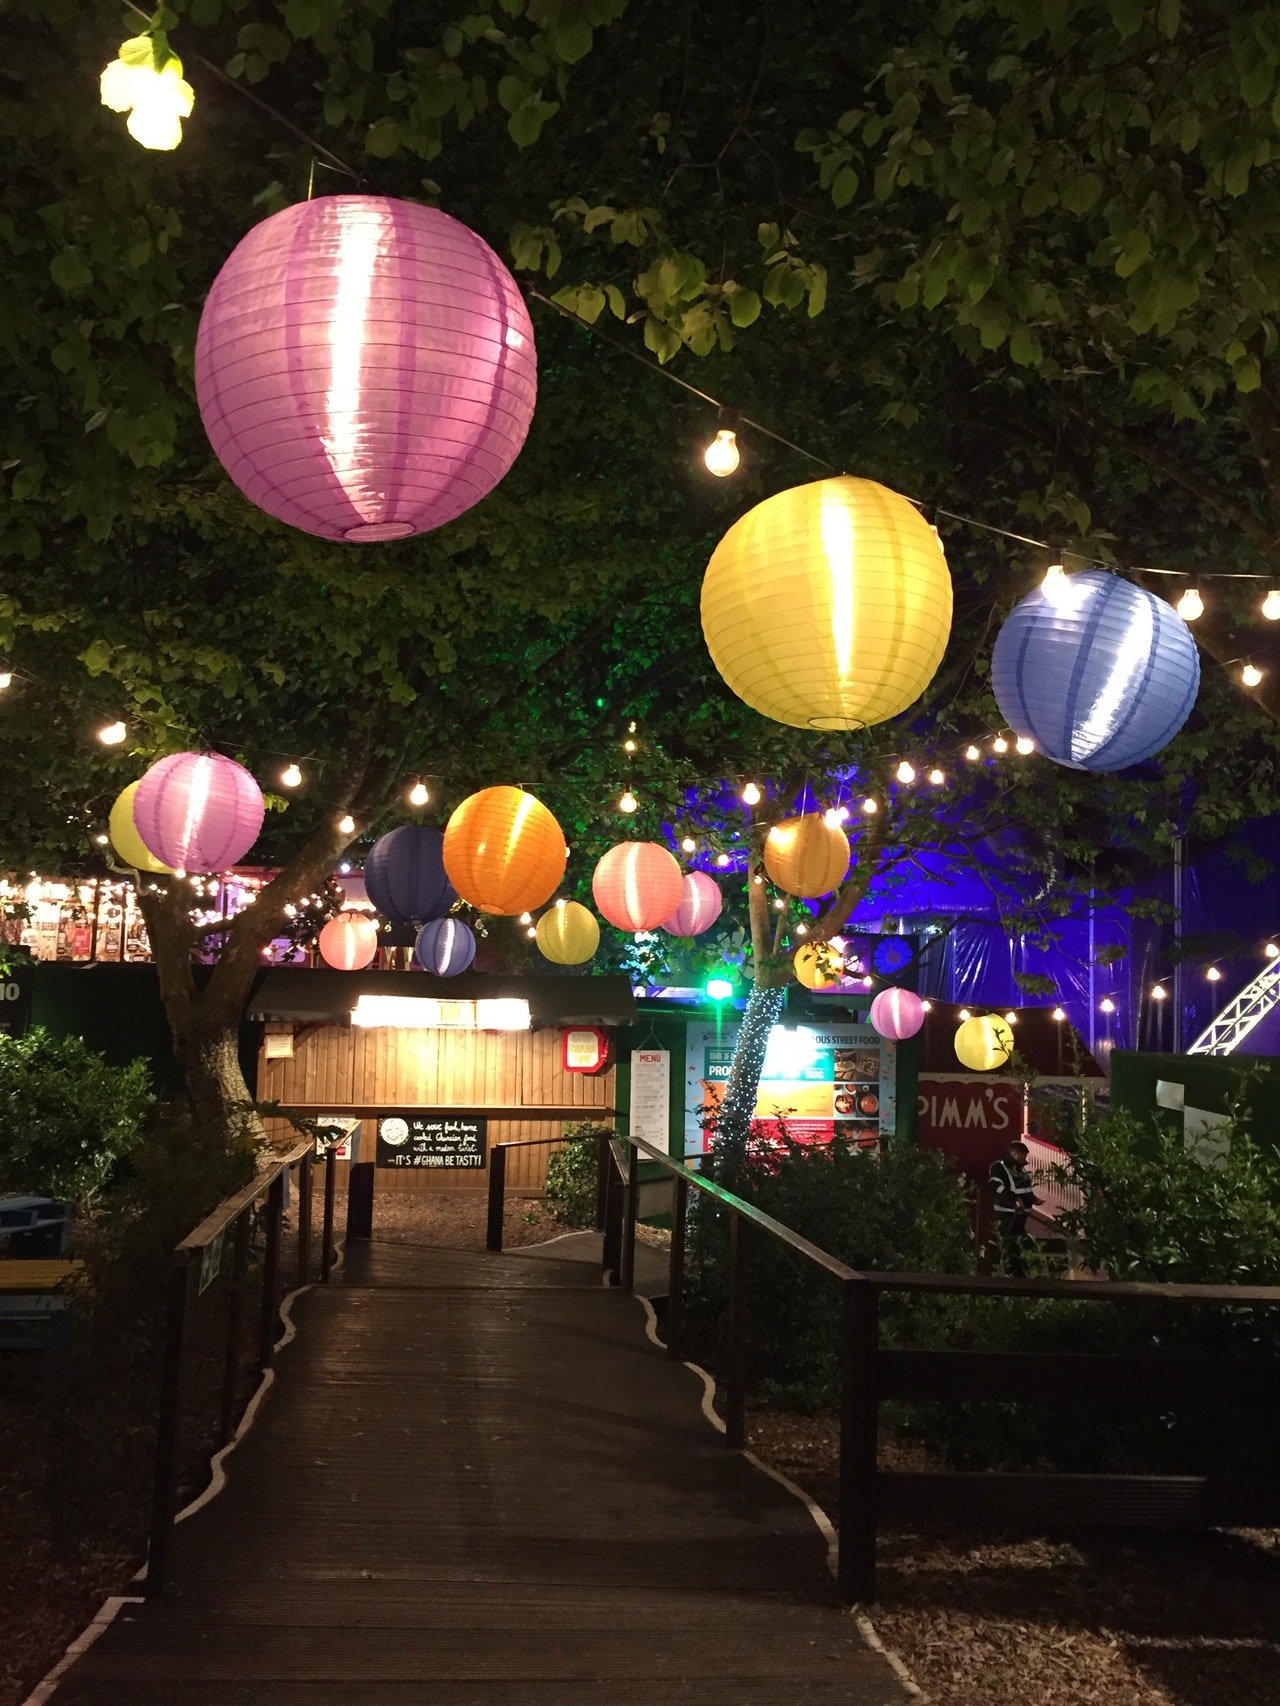 Festa noturna na rua com lanternas coloridas.